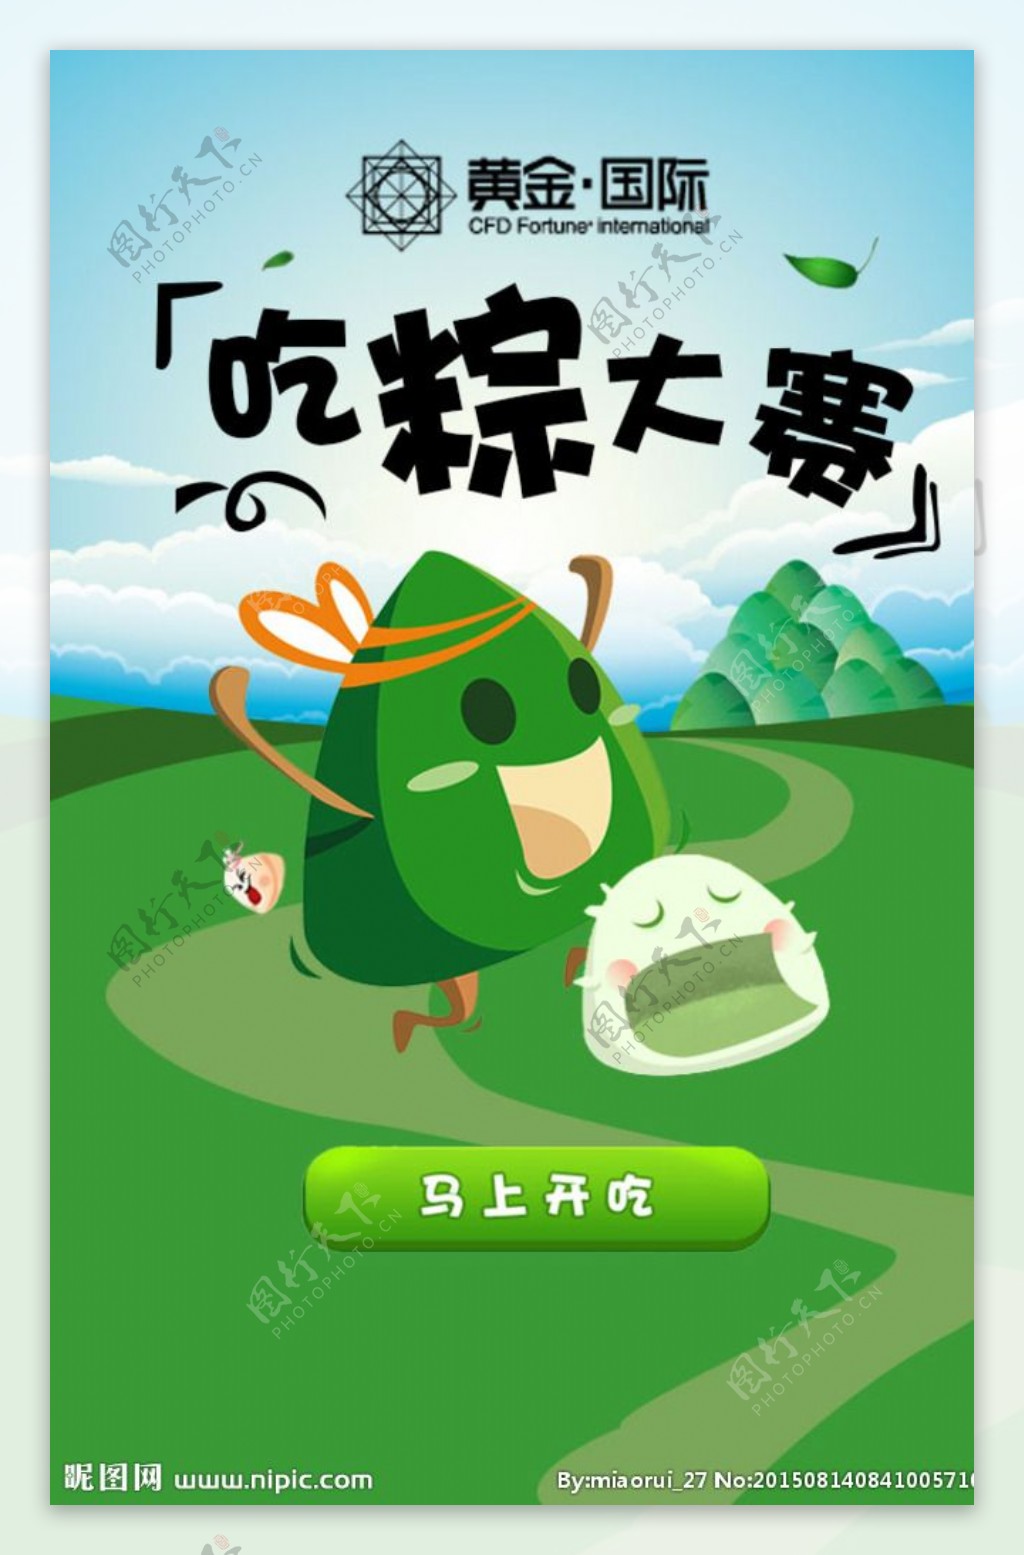 吃粽大赛微信游戏界面设计图片